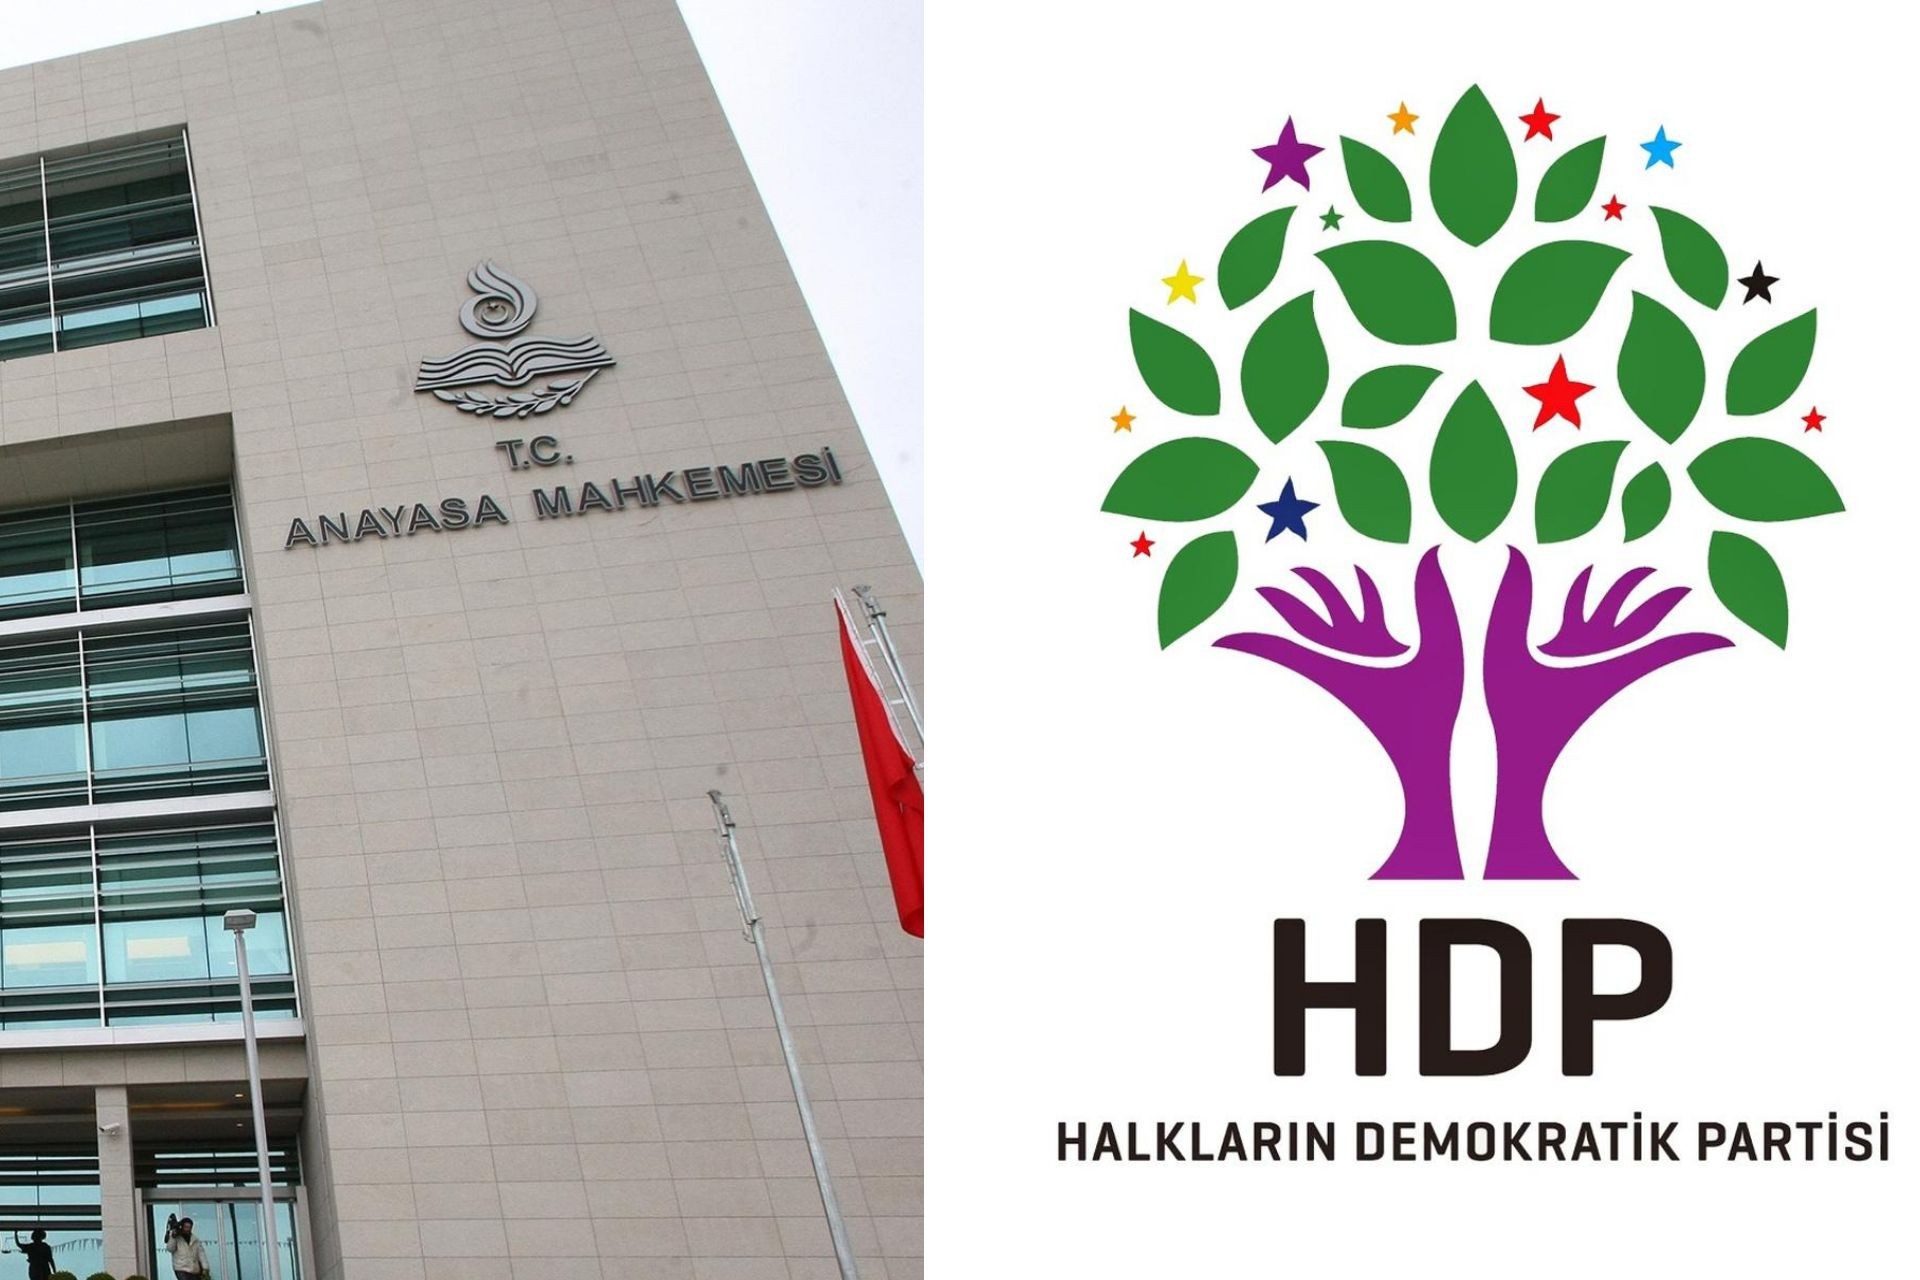 دادسرای قانون اساسی دلایل رد دادخواست انحلال HDP را اعلام کرد